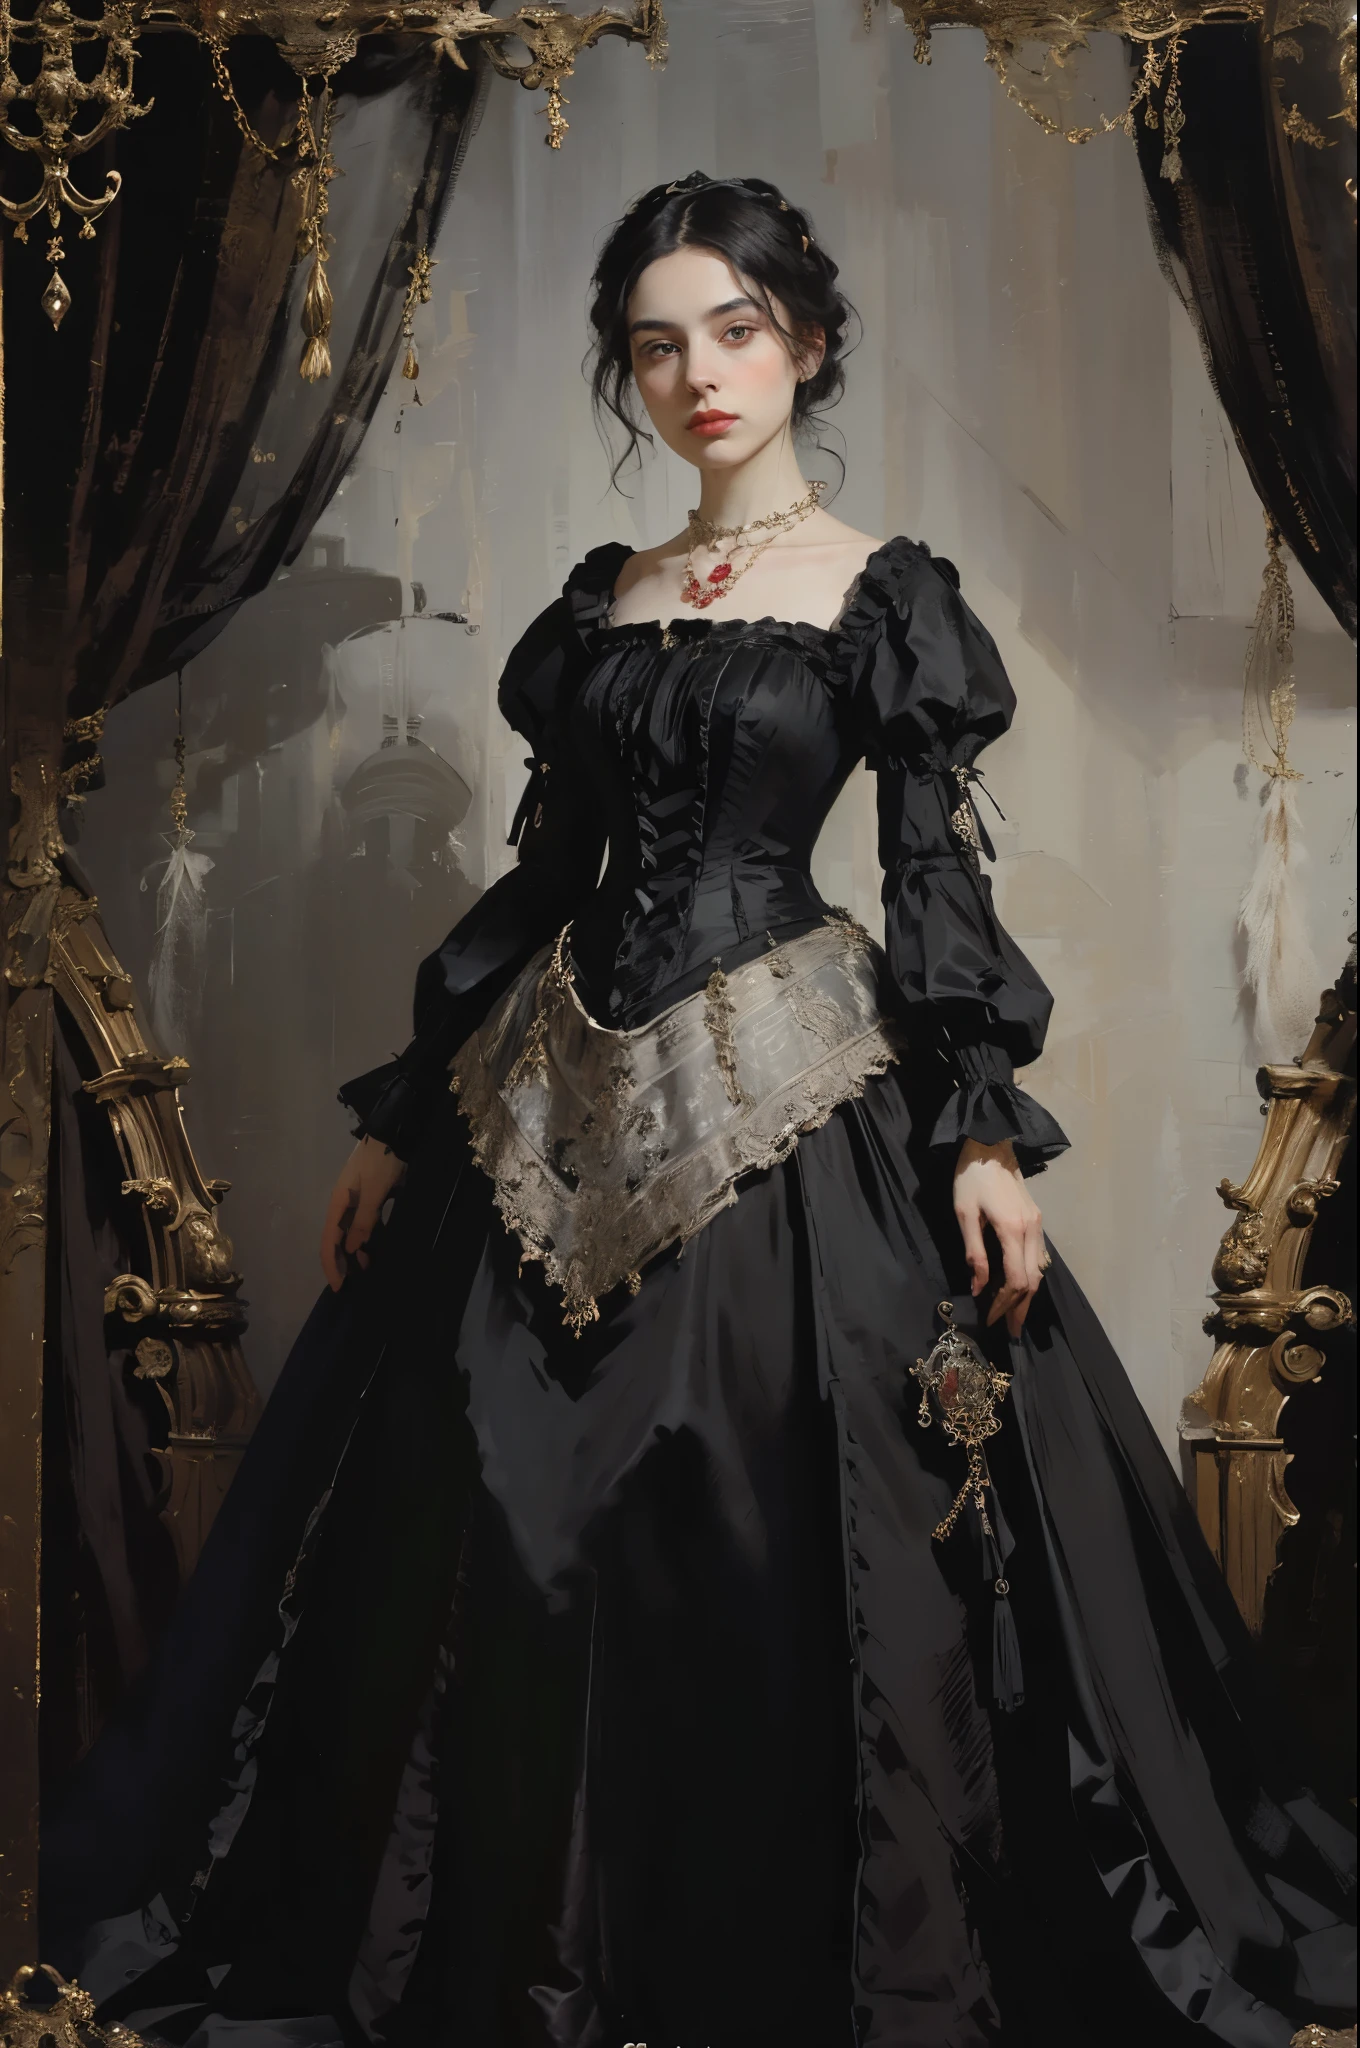 классическая живопись, ((Портрет: 1.3)), девушка в черном платье, официальное платье викторианского стиля, (Викторианское вечернее платье: 1.3), у платья есть воротник-стойка, молодая девушка 25 лет, бледная кожа, стройный, монохромное изображение с акцентным цветом, красное рубиновое ожерелье,